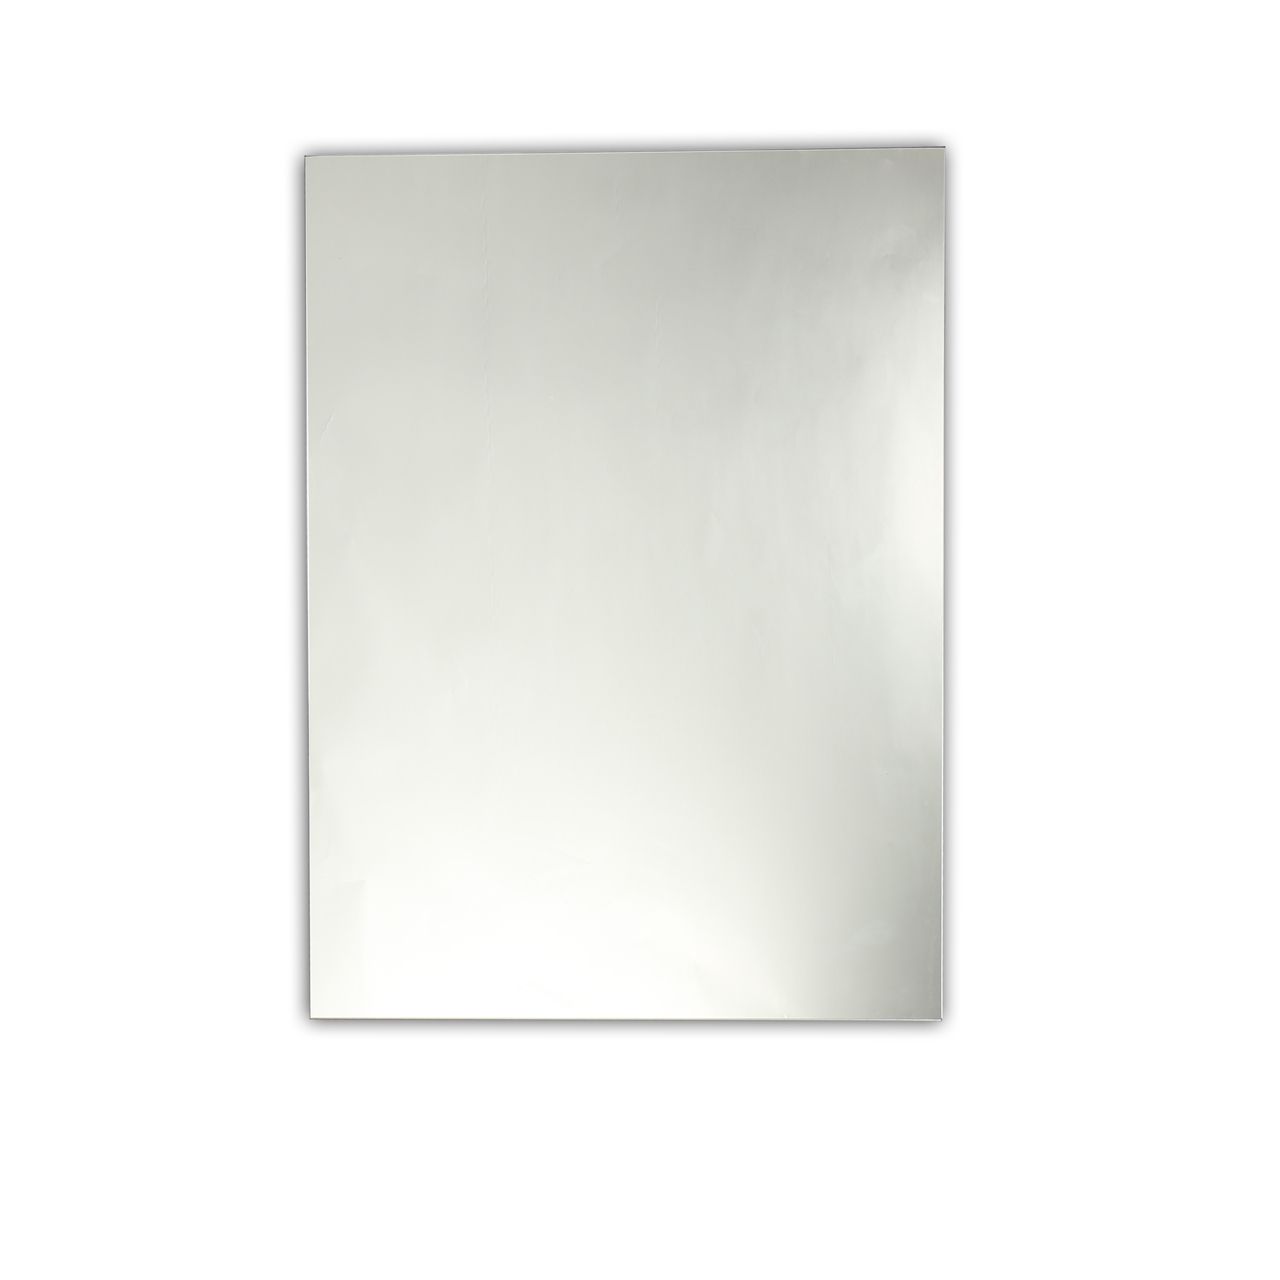 Chloe Lighting, Inc Ch7m063sv24 Frt Frameless Mirror Intended For Tetbury Frameless Tri Bevel Wall Mirrors (View 12 of 15)